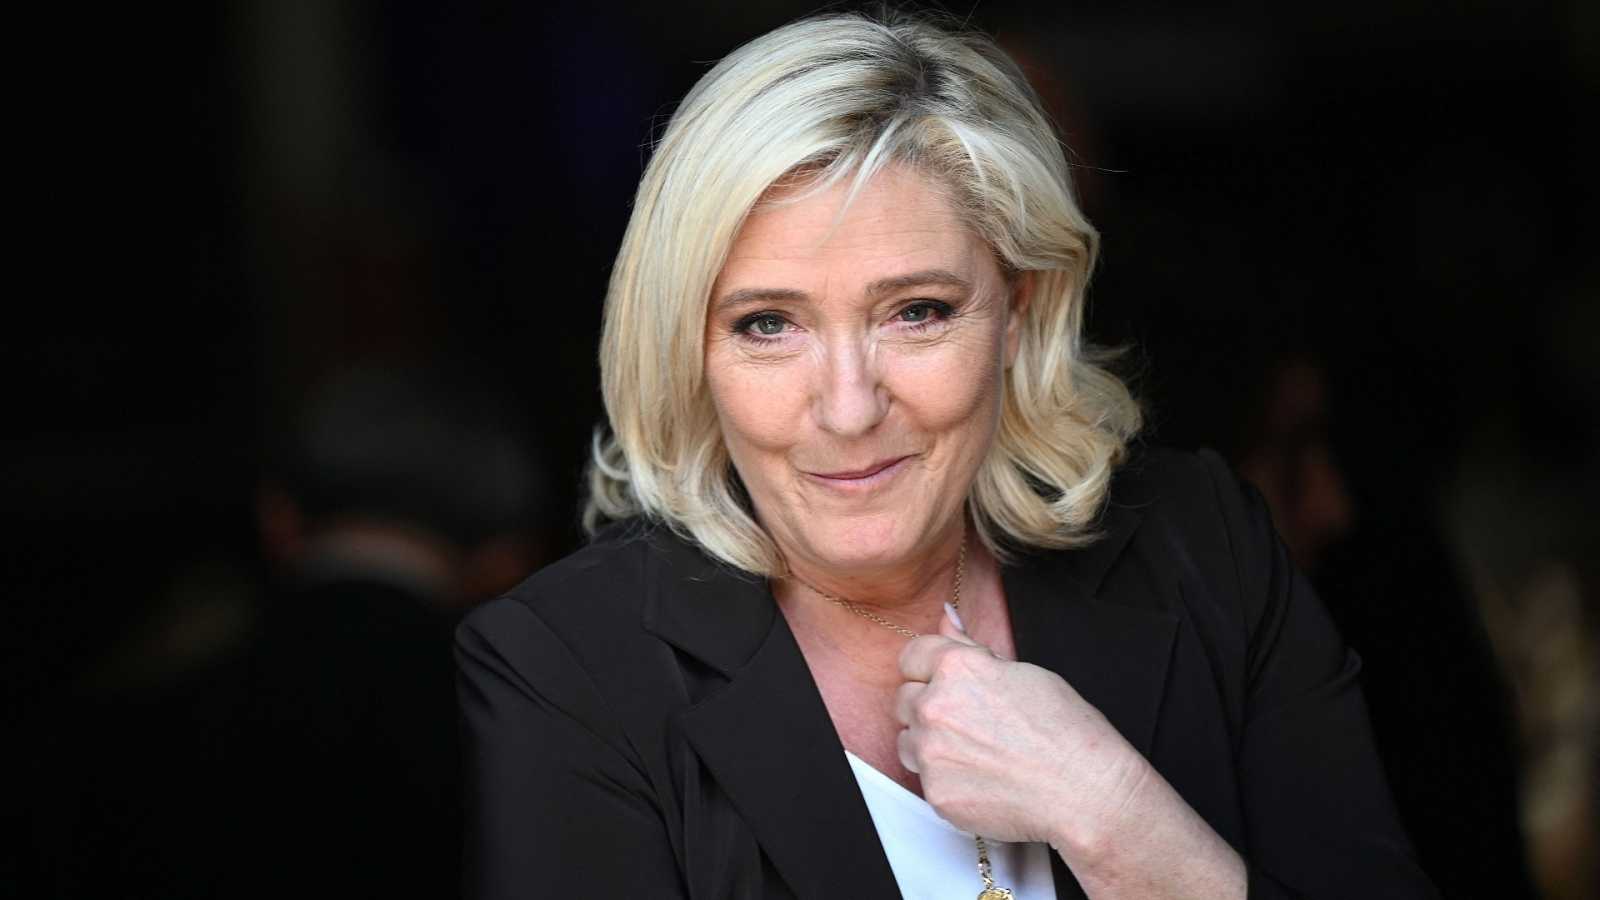 Marine Le Pen puede tiene la posibilidad de ganar la segunda vuelta llevando a París el poder de la extrema derecha